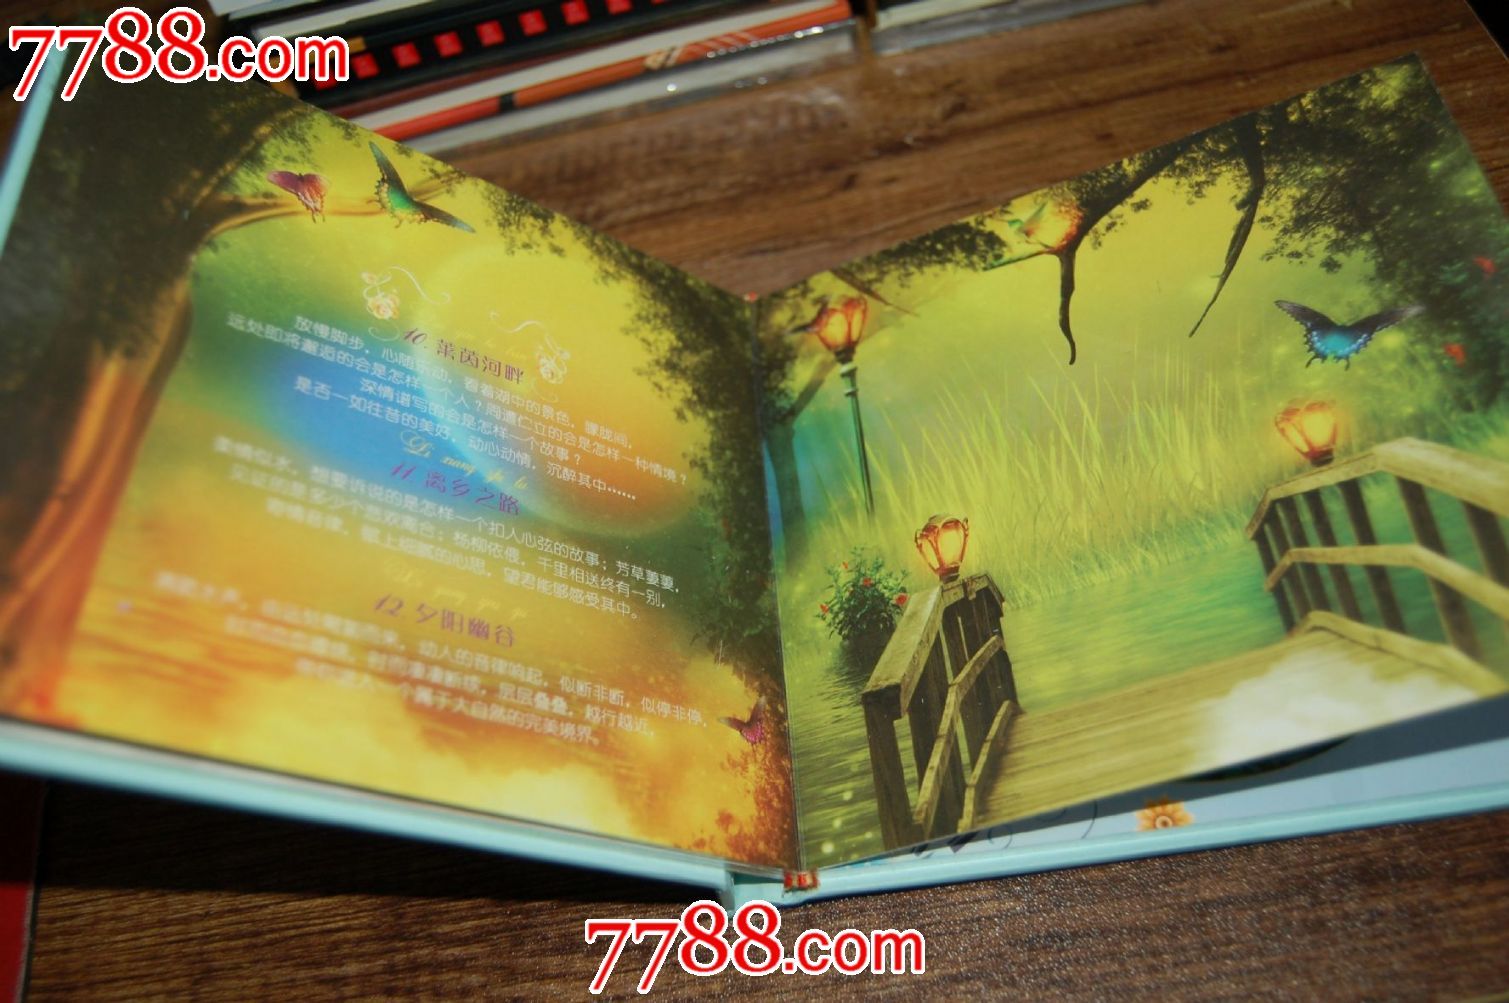 迷幻音乐-《幻境2》【原装正版超完美音质CD